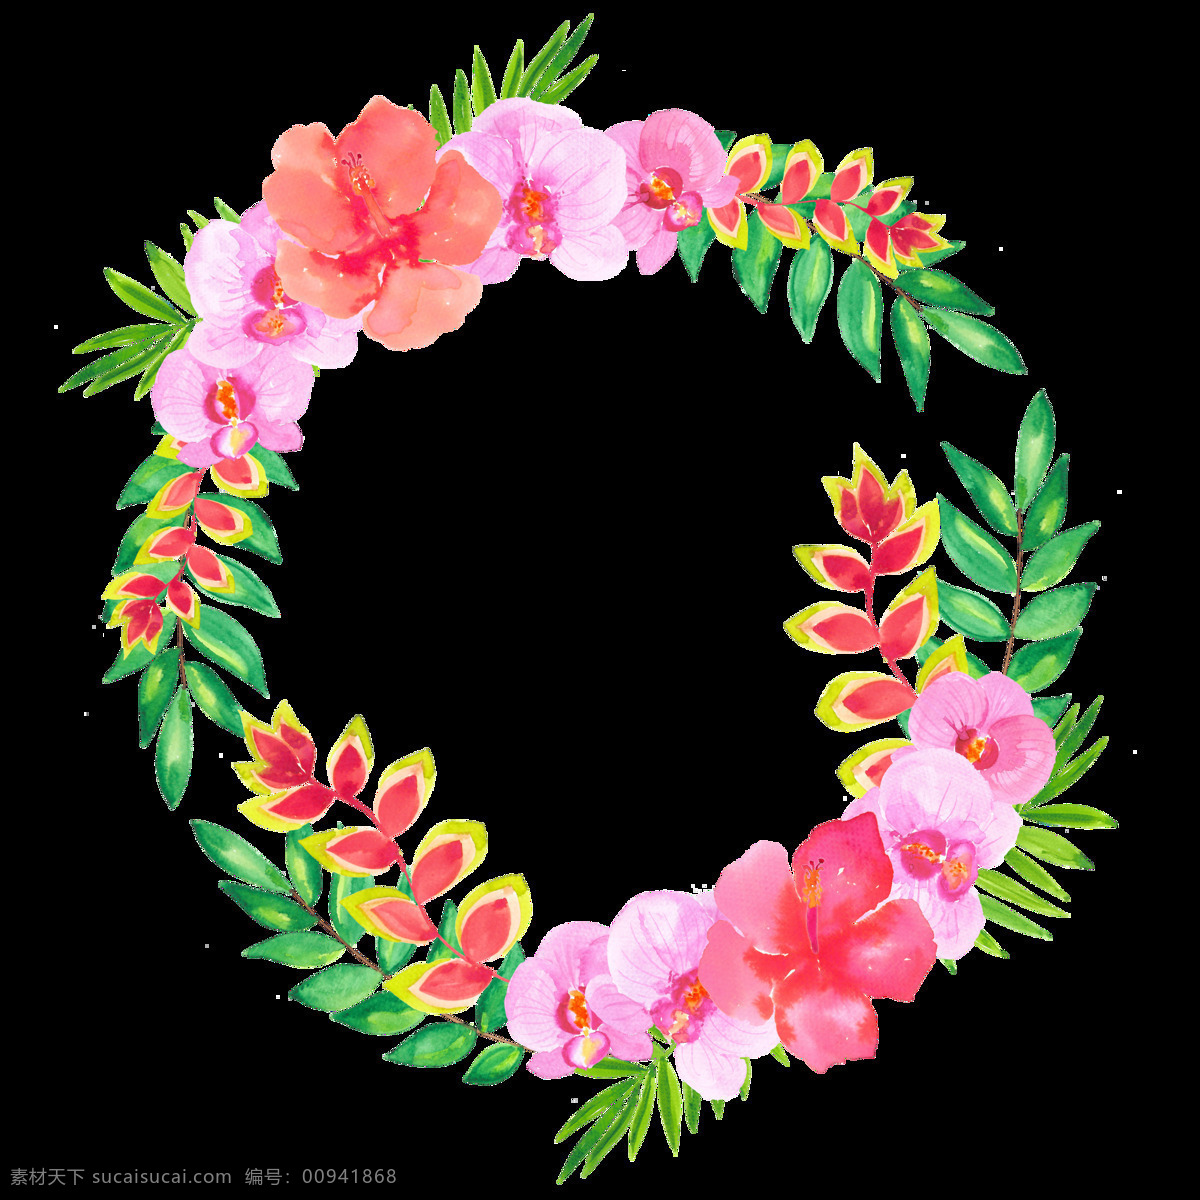 明媚 粉 系 花朵 手绘 花环 装饰 元素 边框 春天 淡雅 粉色花朵 绿叶 手绘小清新 圆形